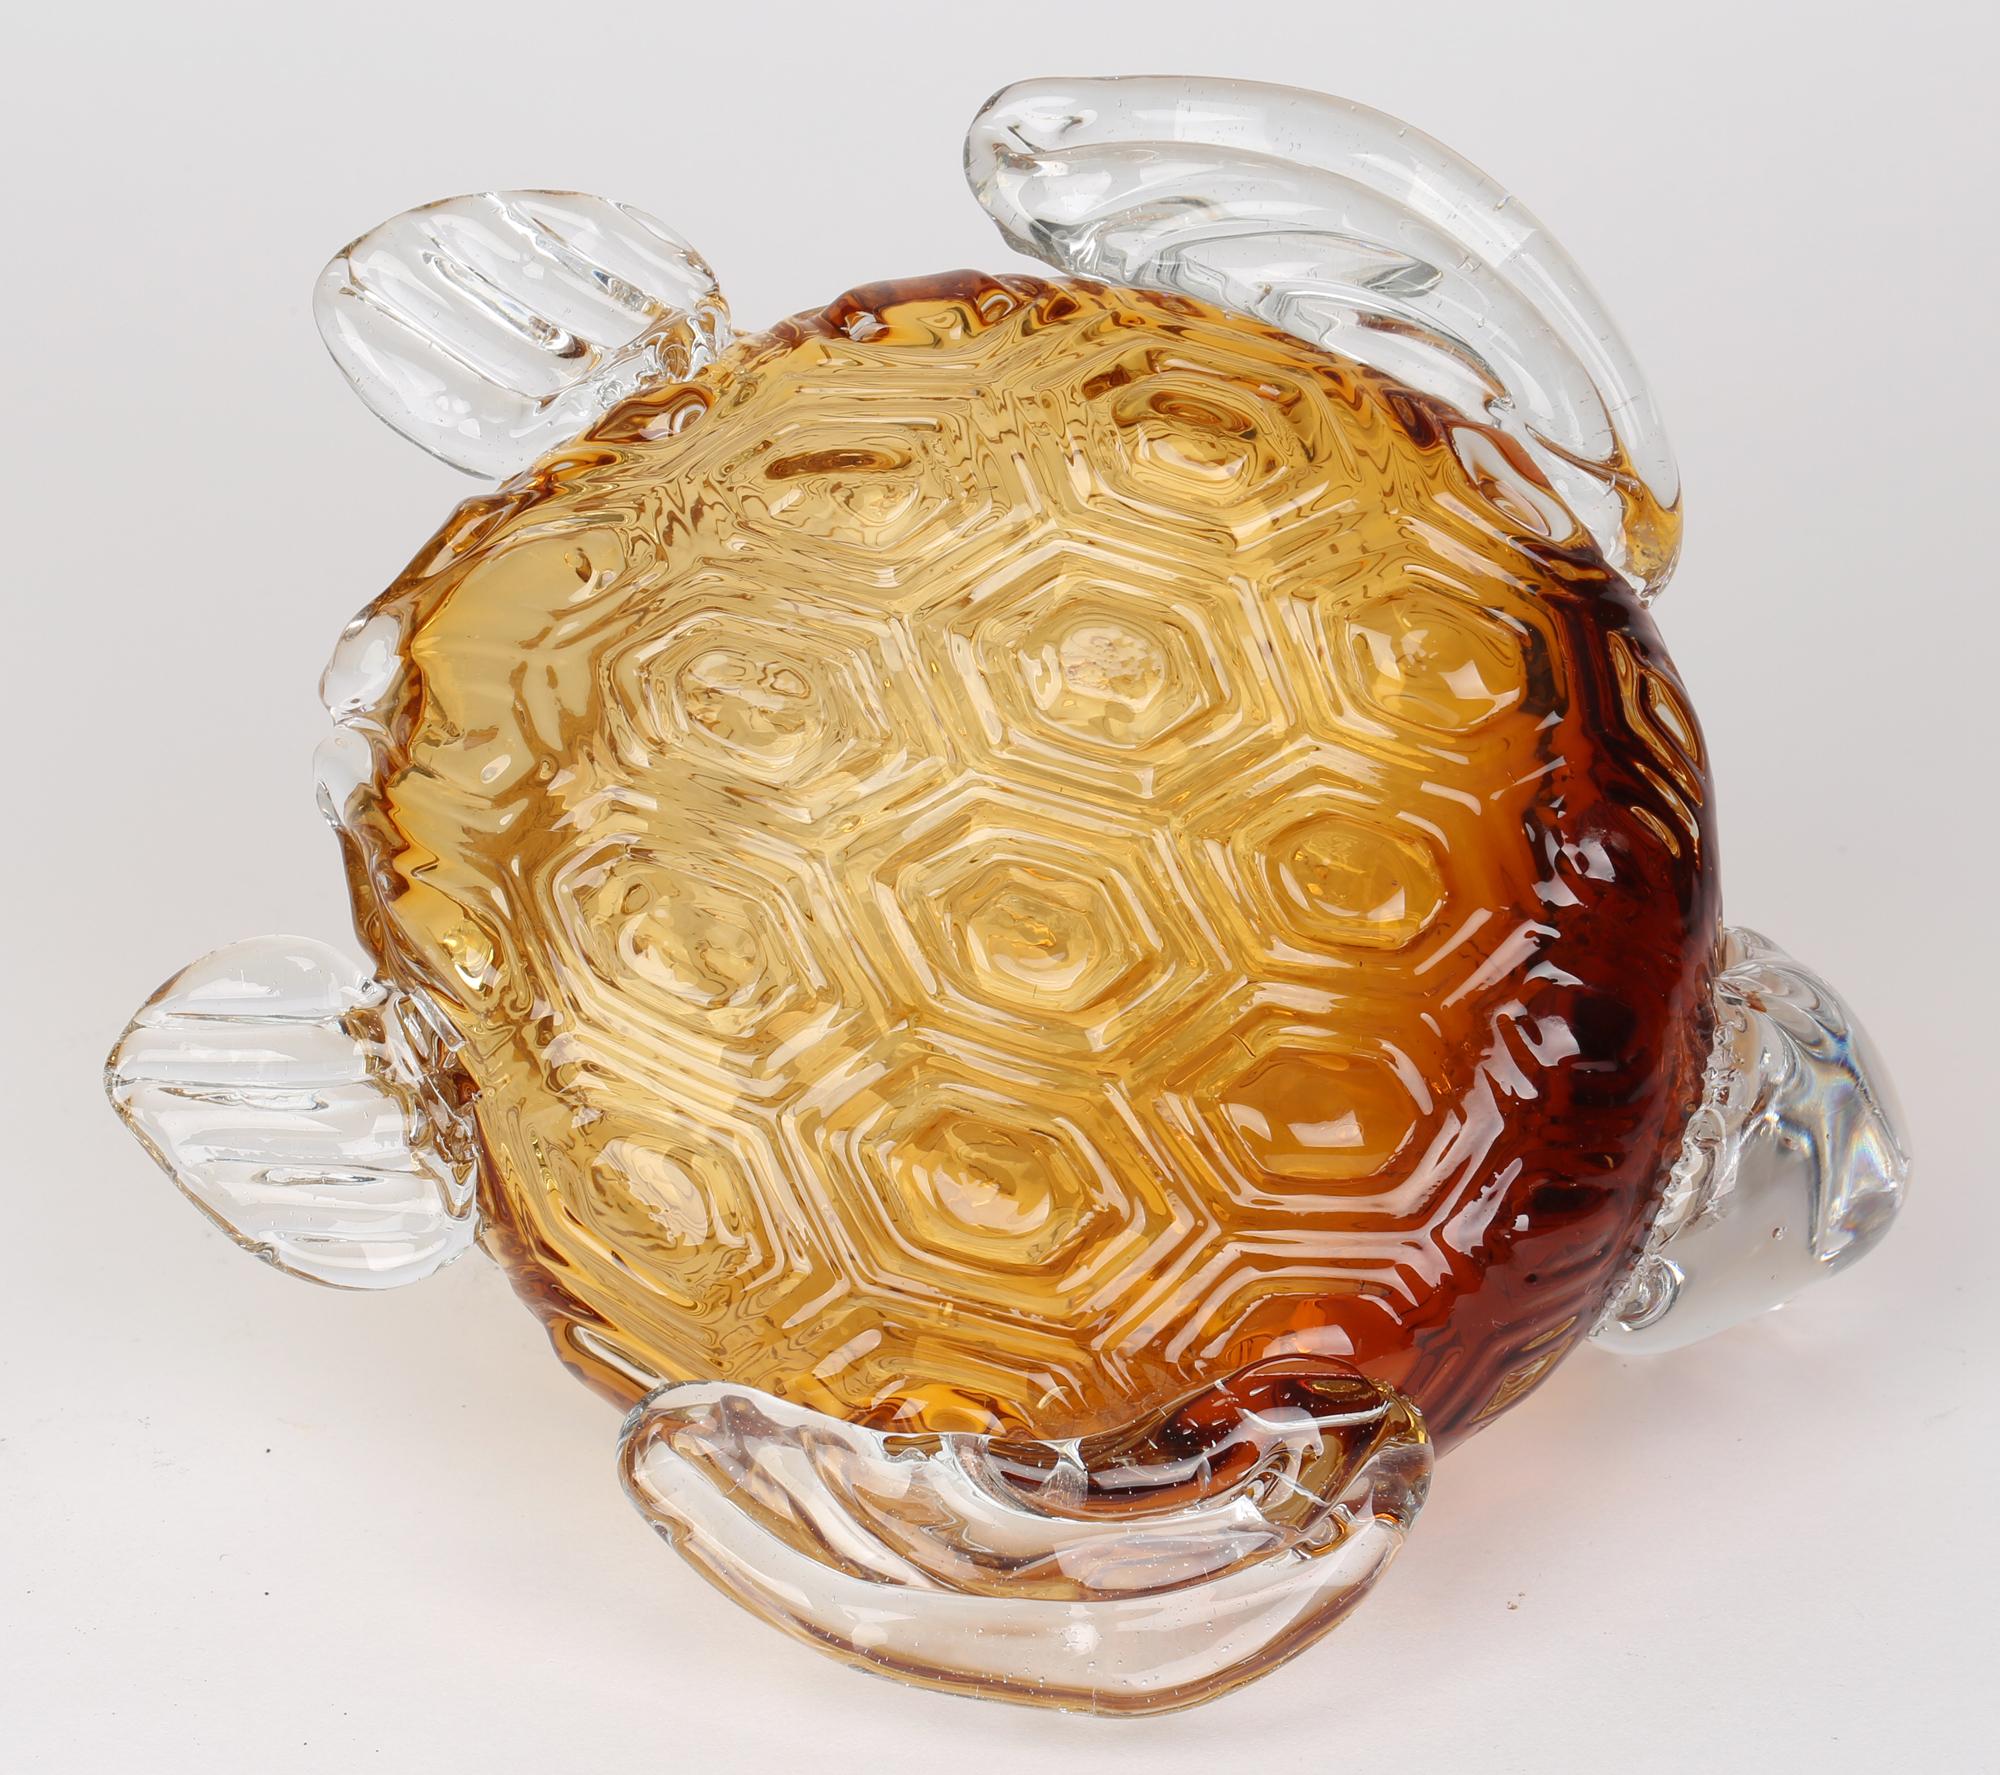 Tortue moderne italienne en verre soufflé creux, attribuée à Murano, datant de la fin du 20e siècle. La tortue a un corps en verre ambré avec un motif d'écailles moulé et appliqué avec des membres et une tête en verre clair. La tortue constitue une